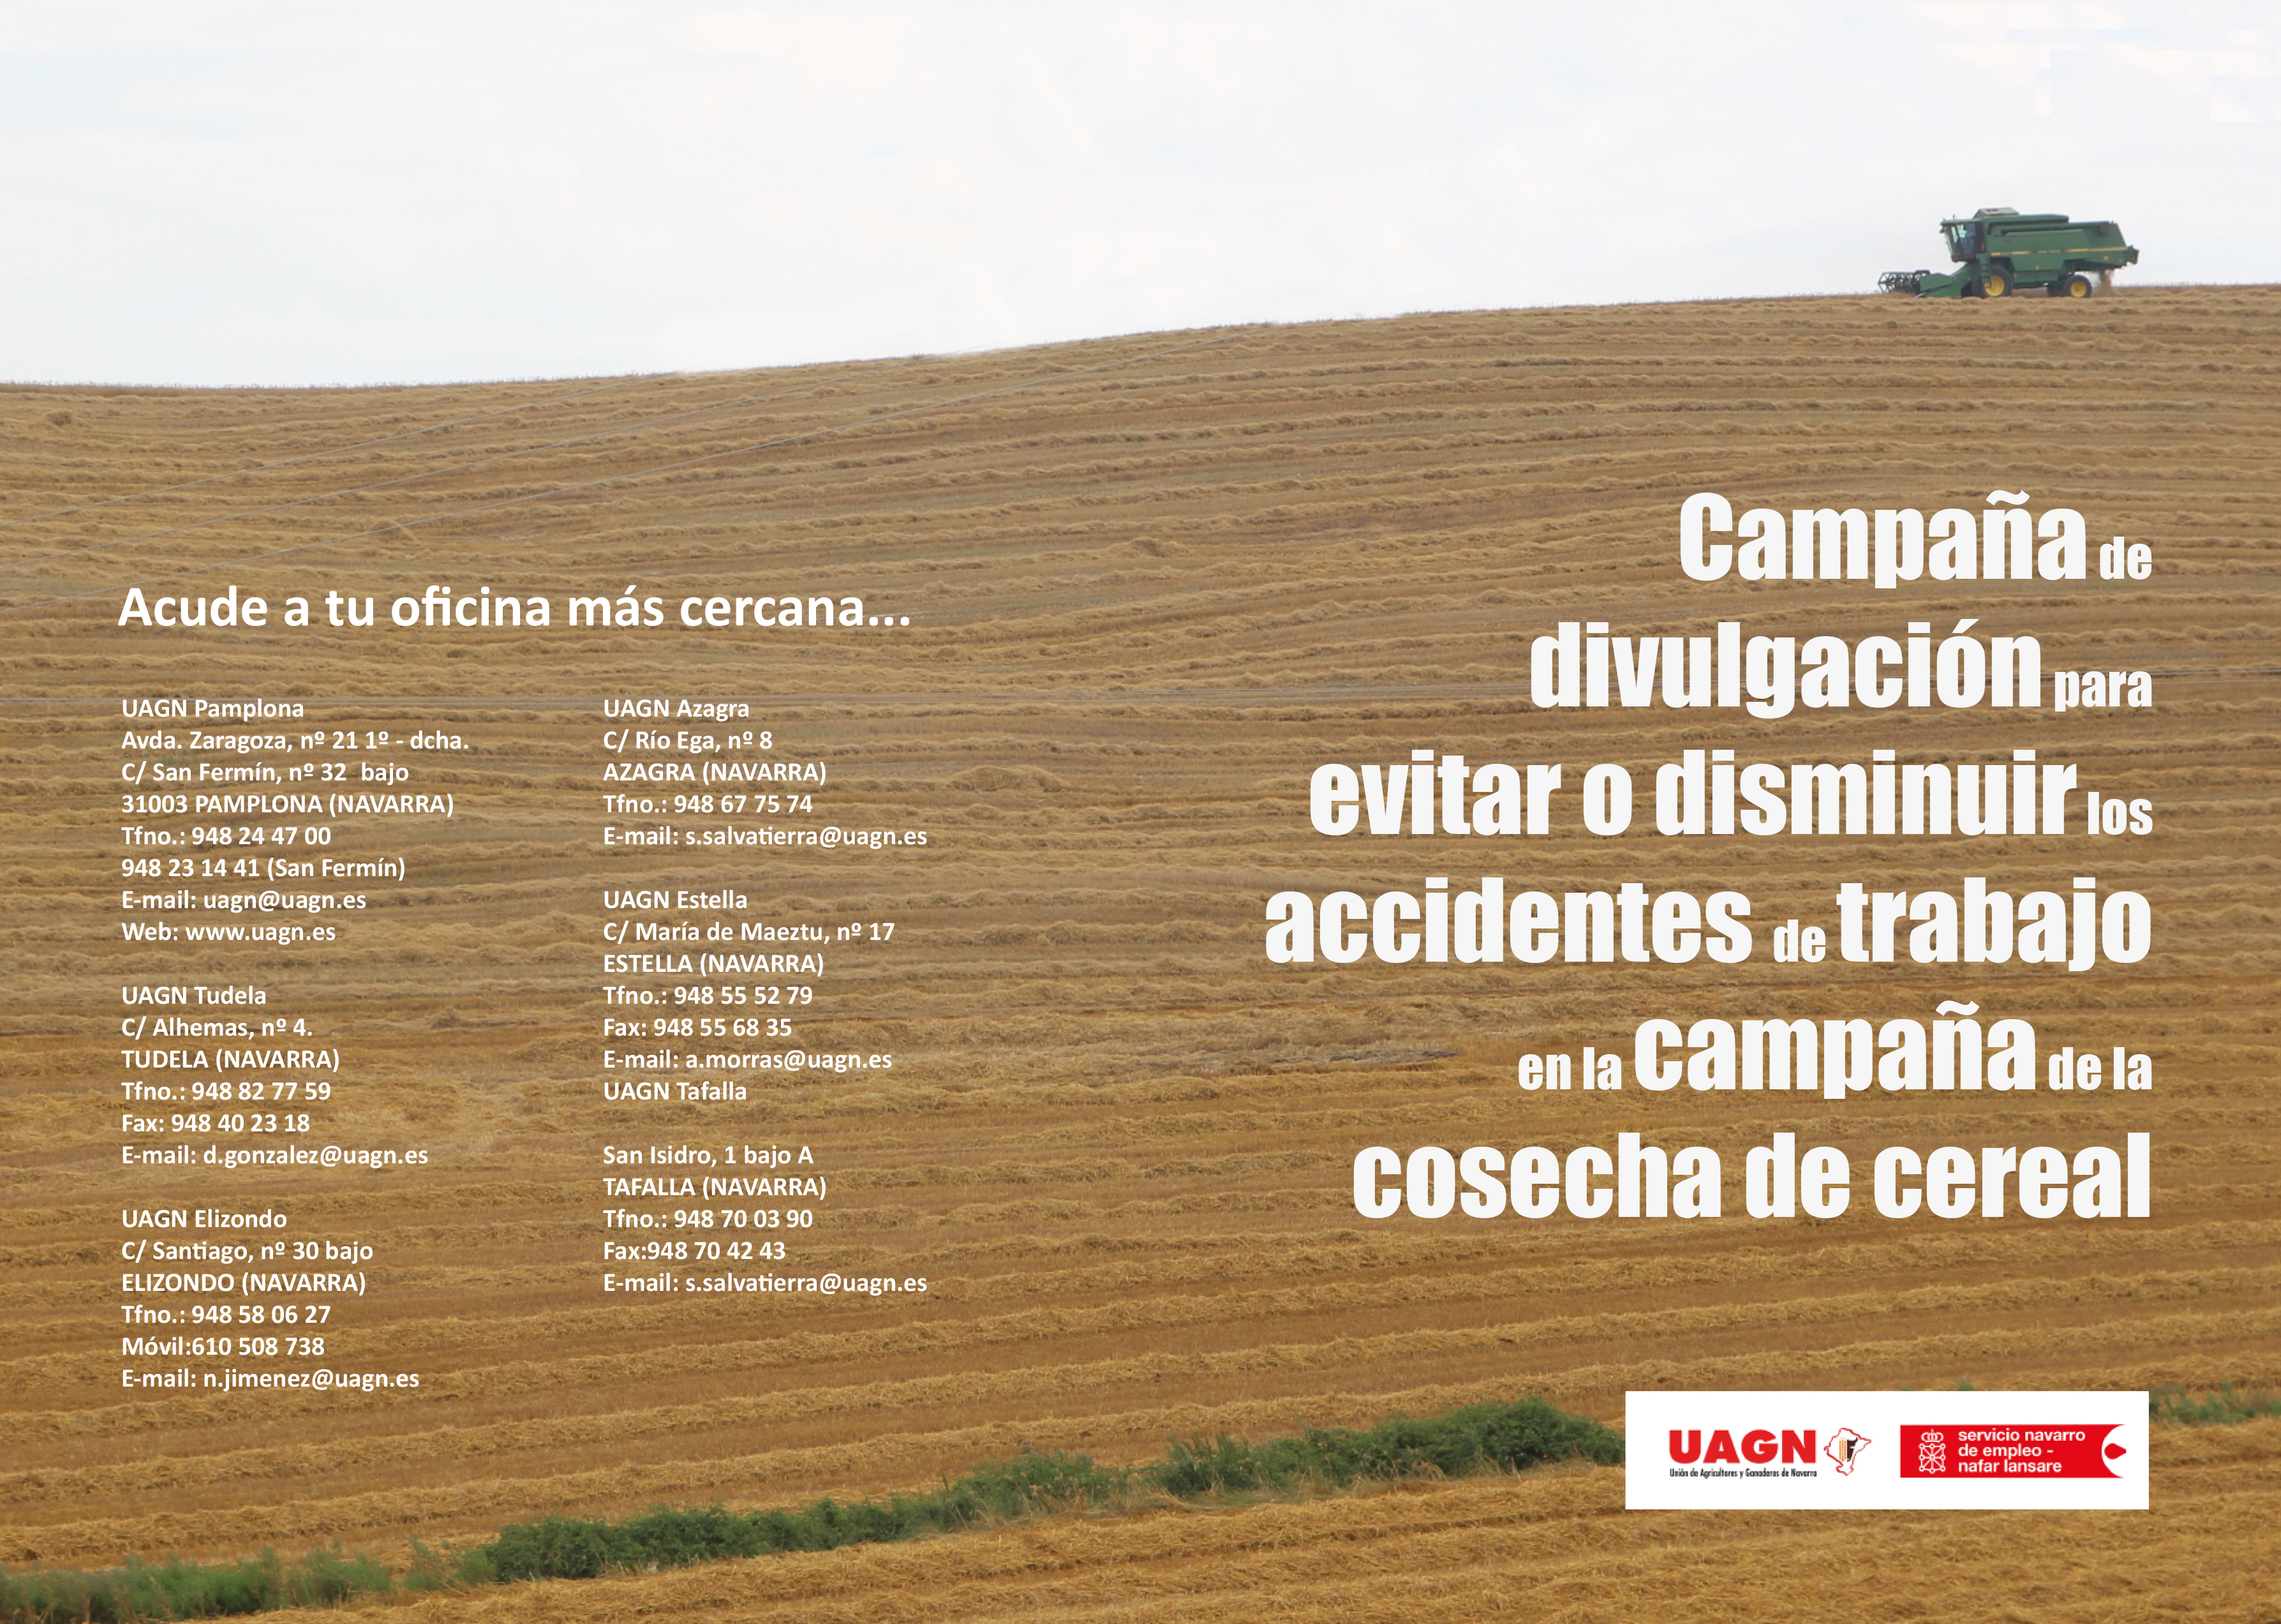 Campaña de divulgación para evitar o disminuir los accidentes de trabajo en la campaña de la cosecha de cereal